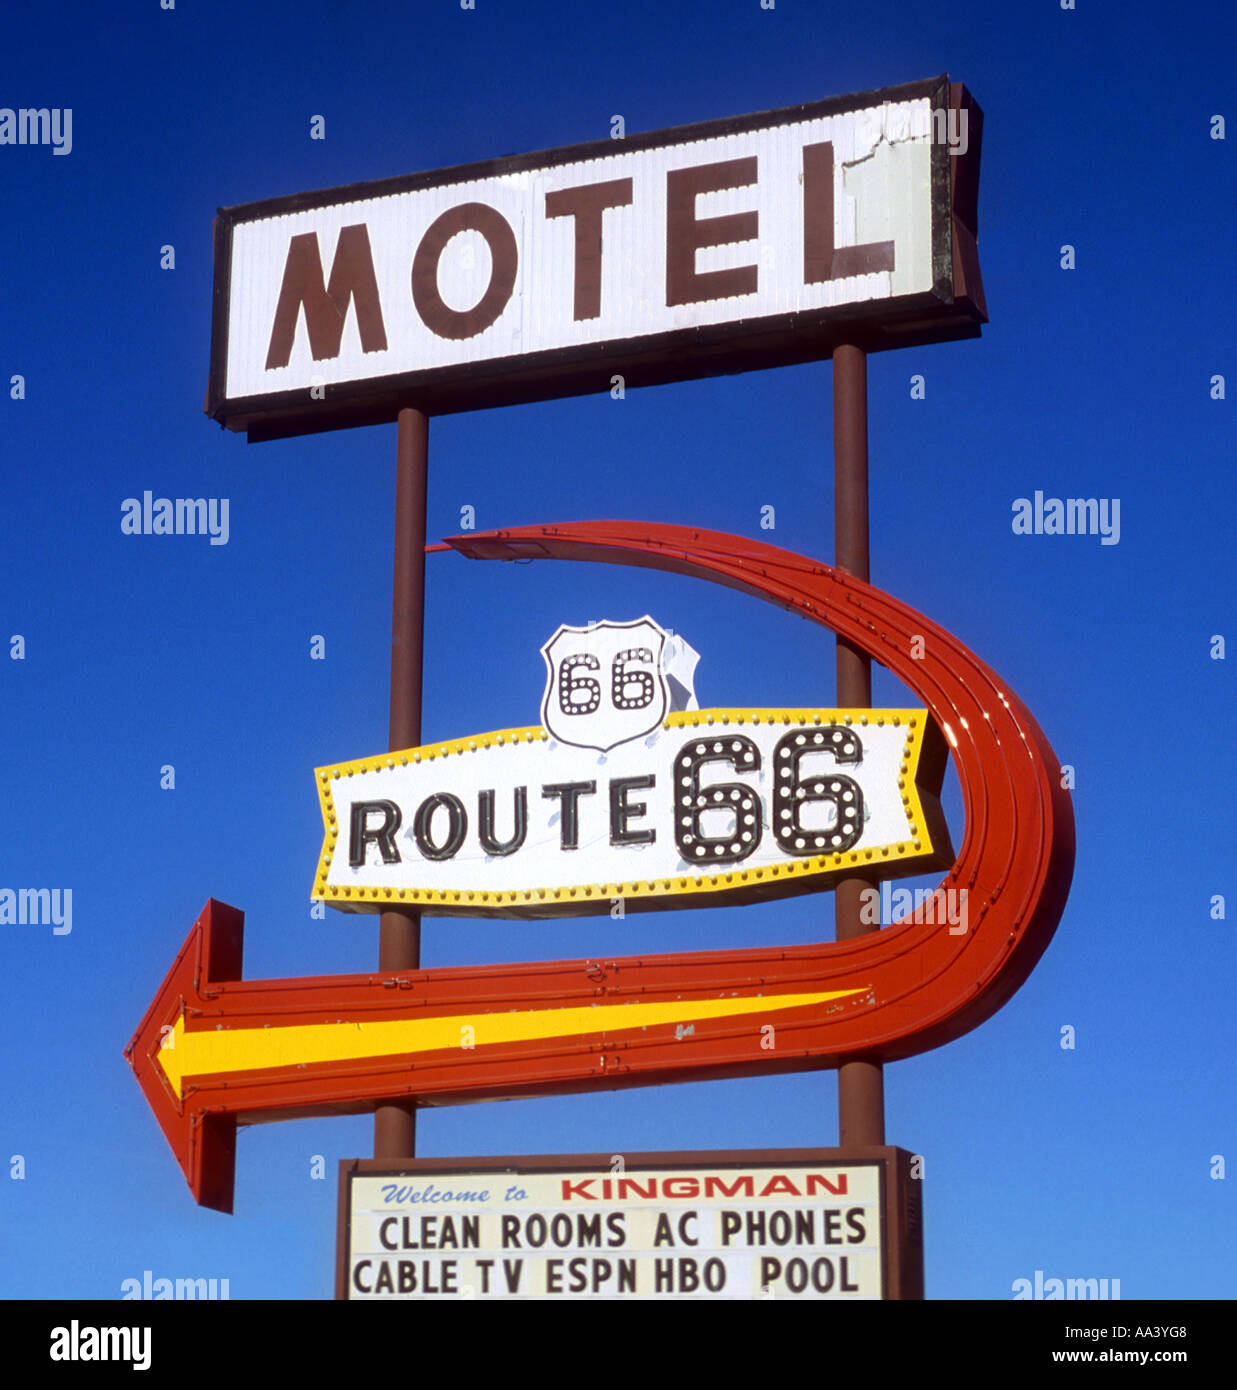 Motel Route 66 cartel ubicado sobre la carretera antigua en Kingman, Arizona  Fotografía de stock - Alamy